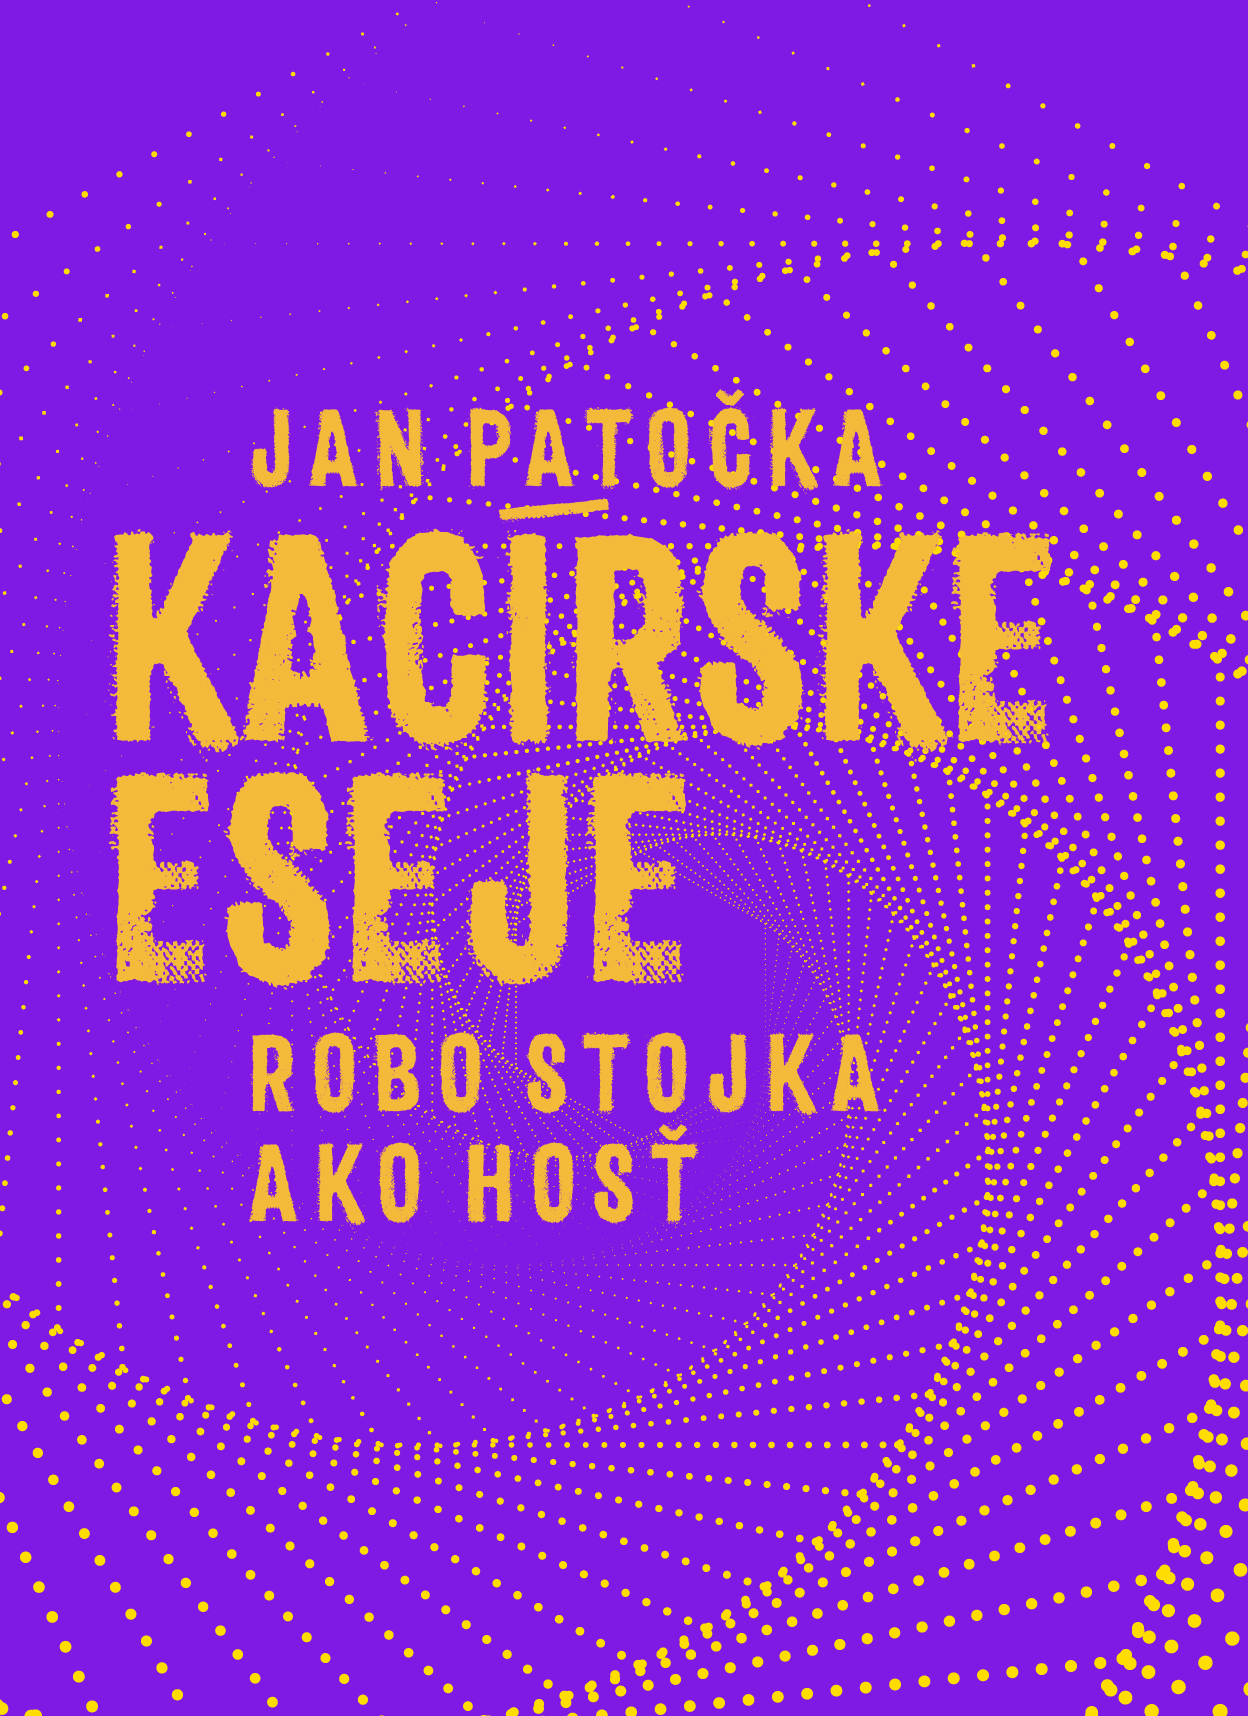 Kacírske eseja, Jan Patočka, igrici na koberci február 2024